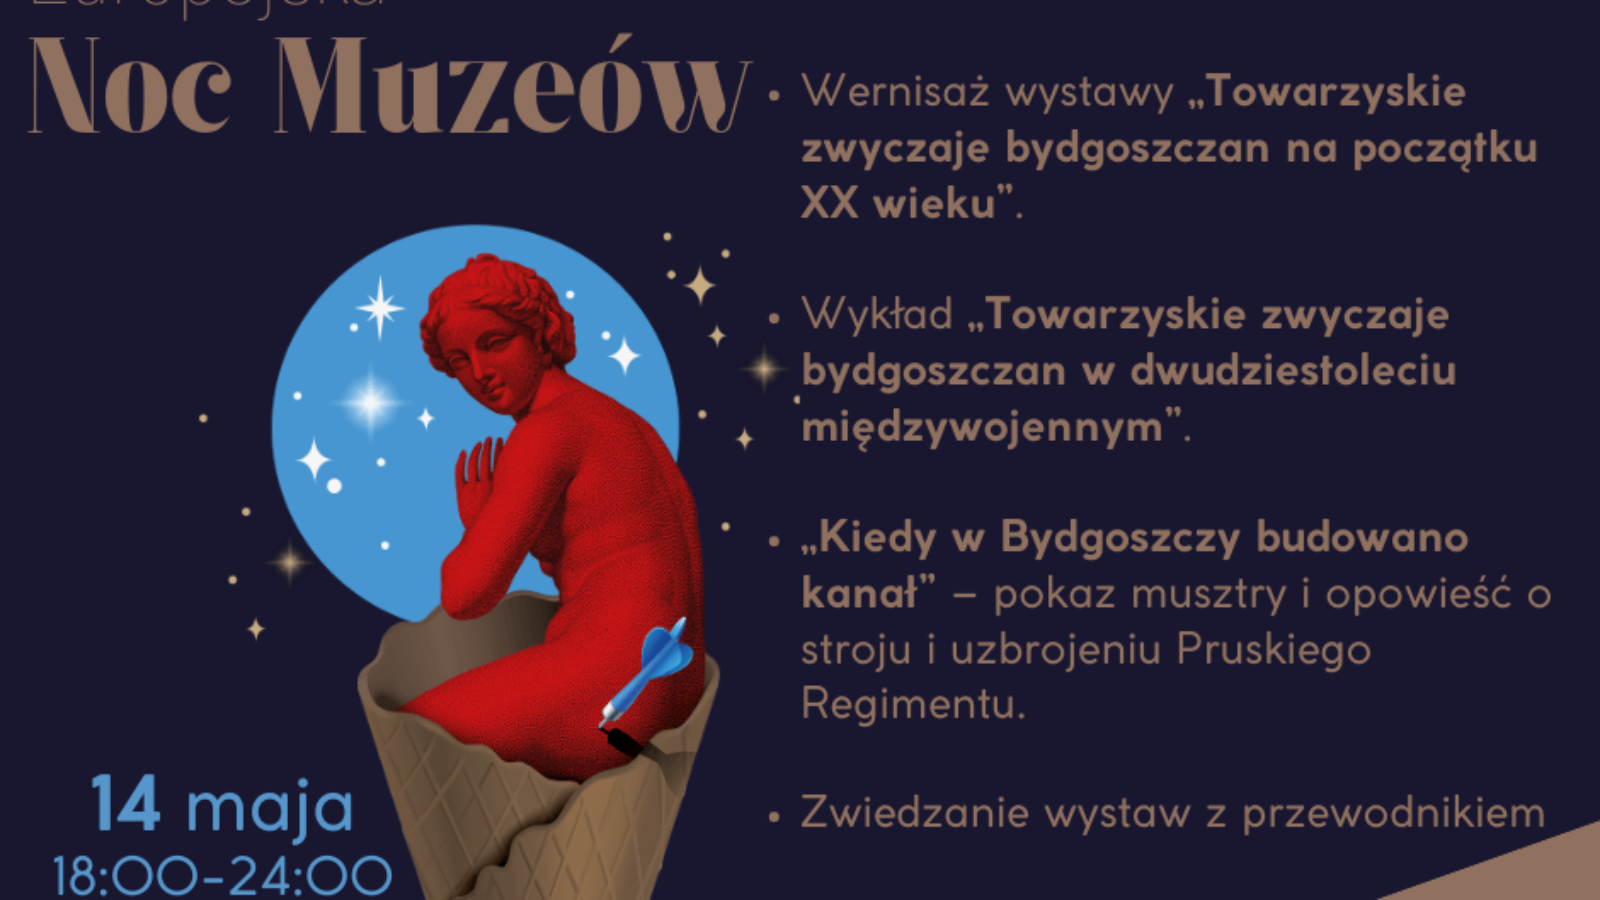 Noc-muzeow-5-1